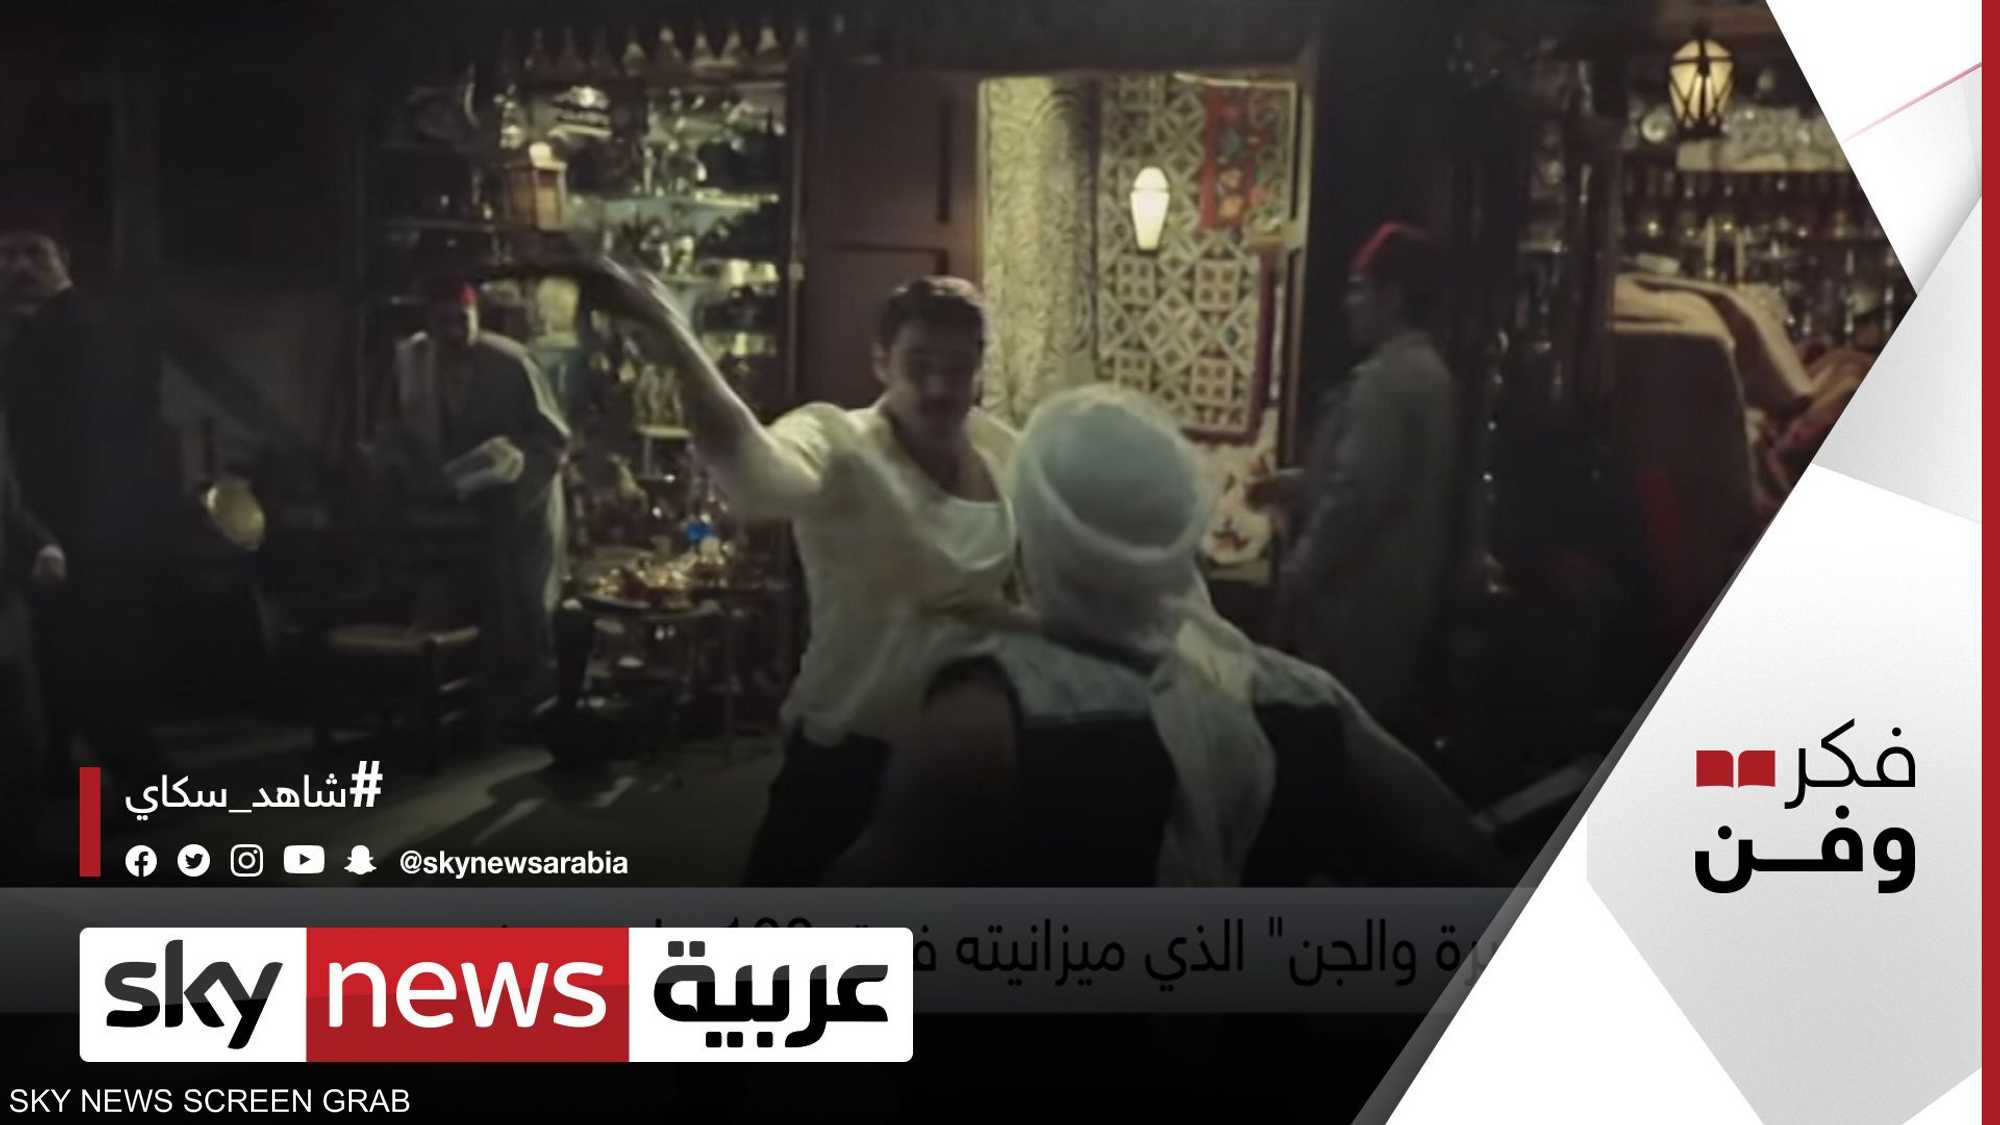 الأفلام المصرية تعود للإنتاجات الضخمة مع عرض فيلم كيرة والجن